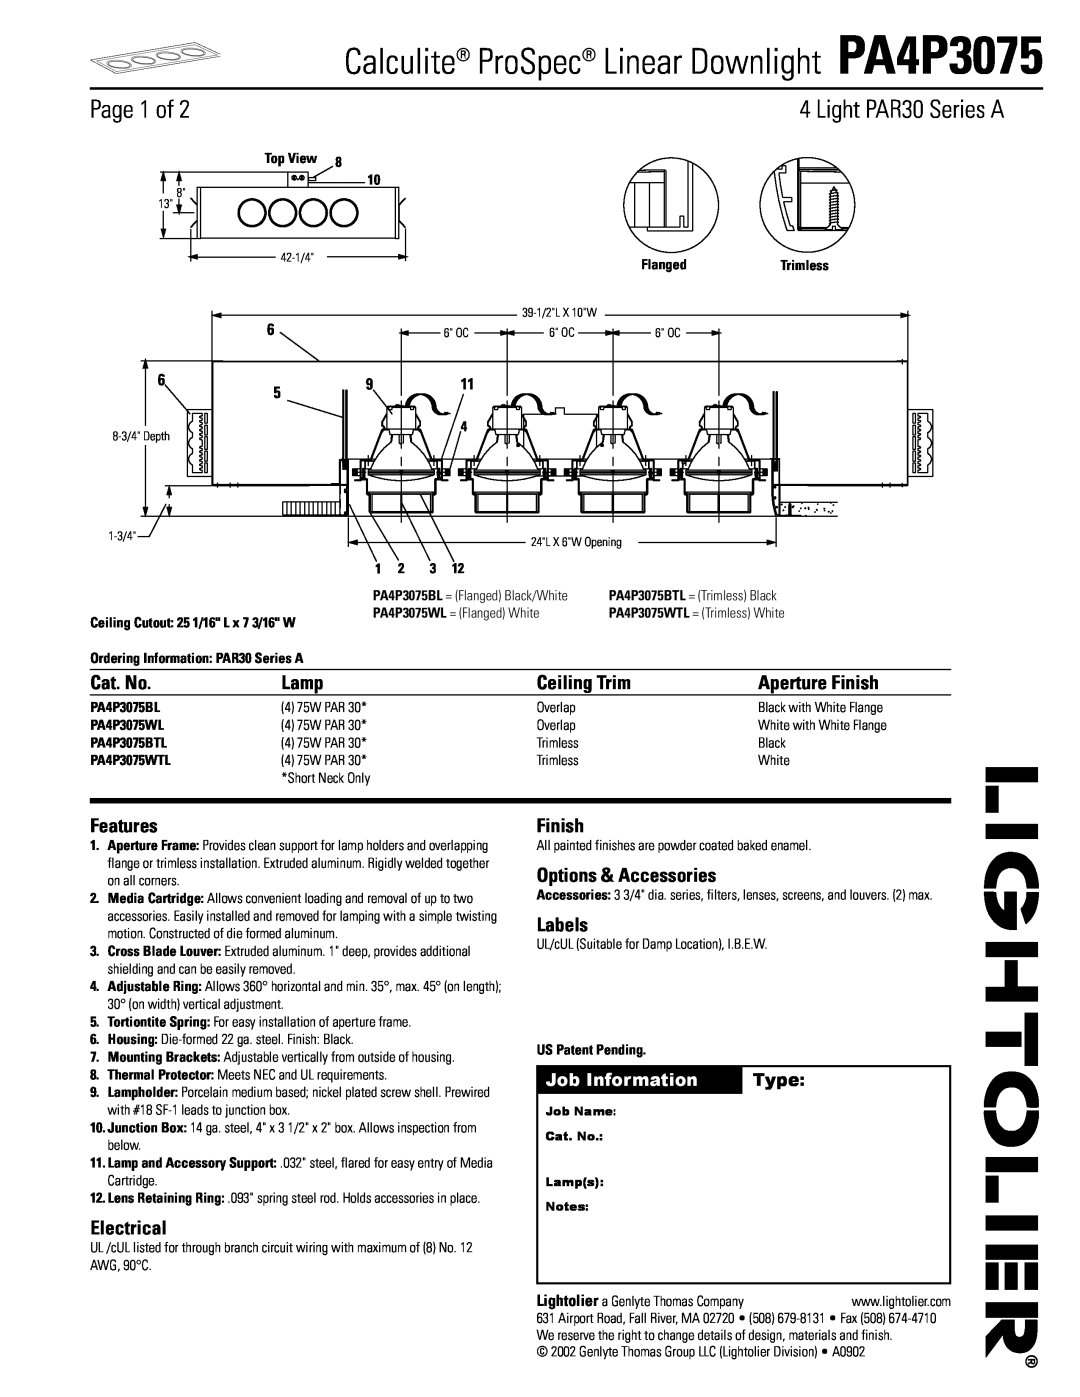 Lightolier PA4P3075 manual Page 1 of, Light PAR30 Series A, Cat. No, Lamp, Ceiling Trim, Aperture Finish, Features, Labels 